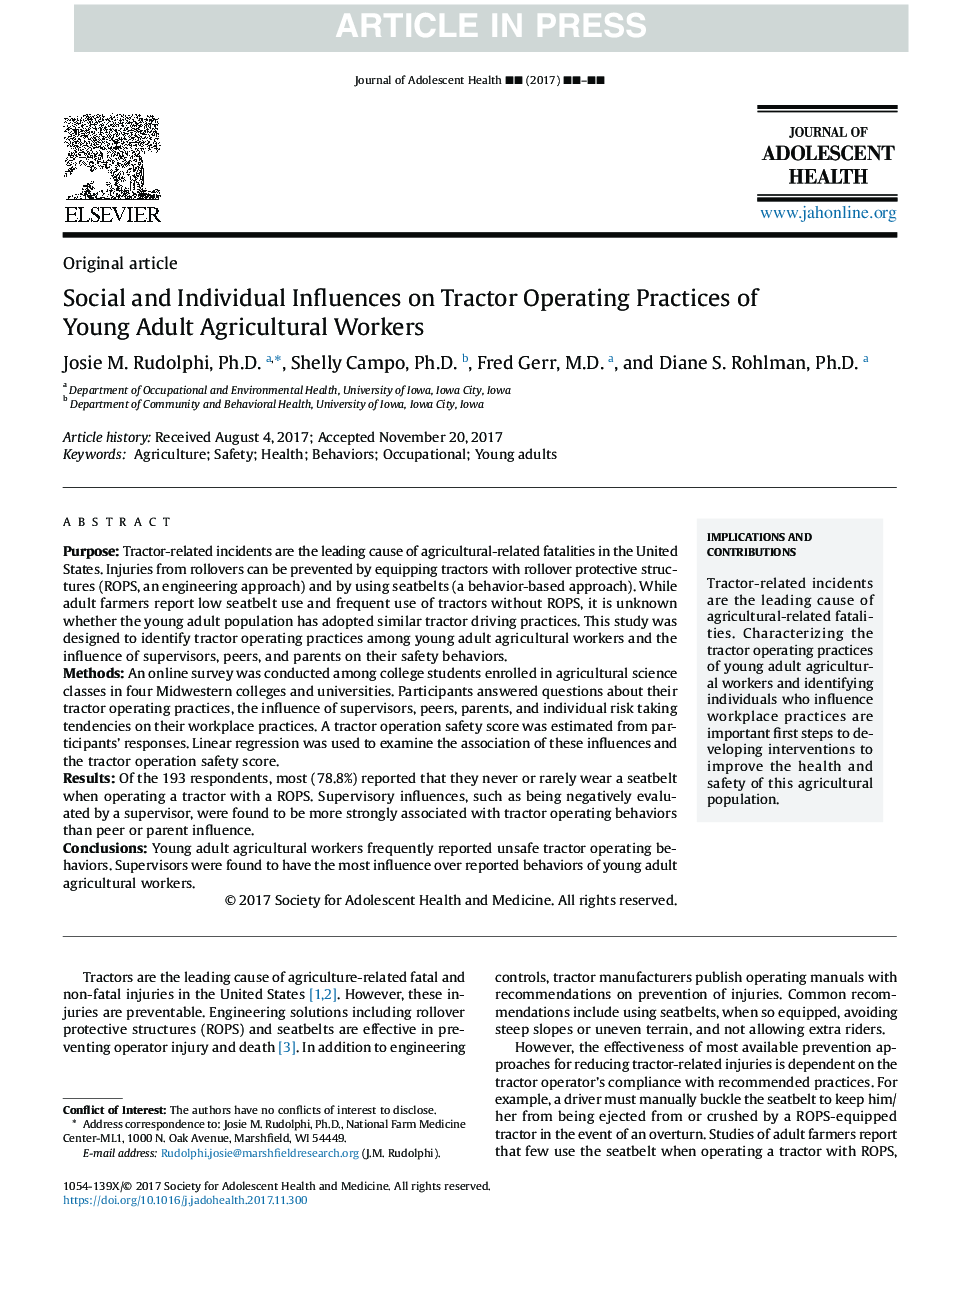 تاثیرات اجتماعی و فردی در عملکردهای عملیاتی تراکتور کارگران کشاورزی جوانان 